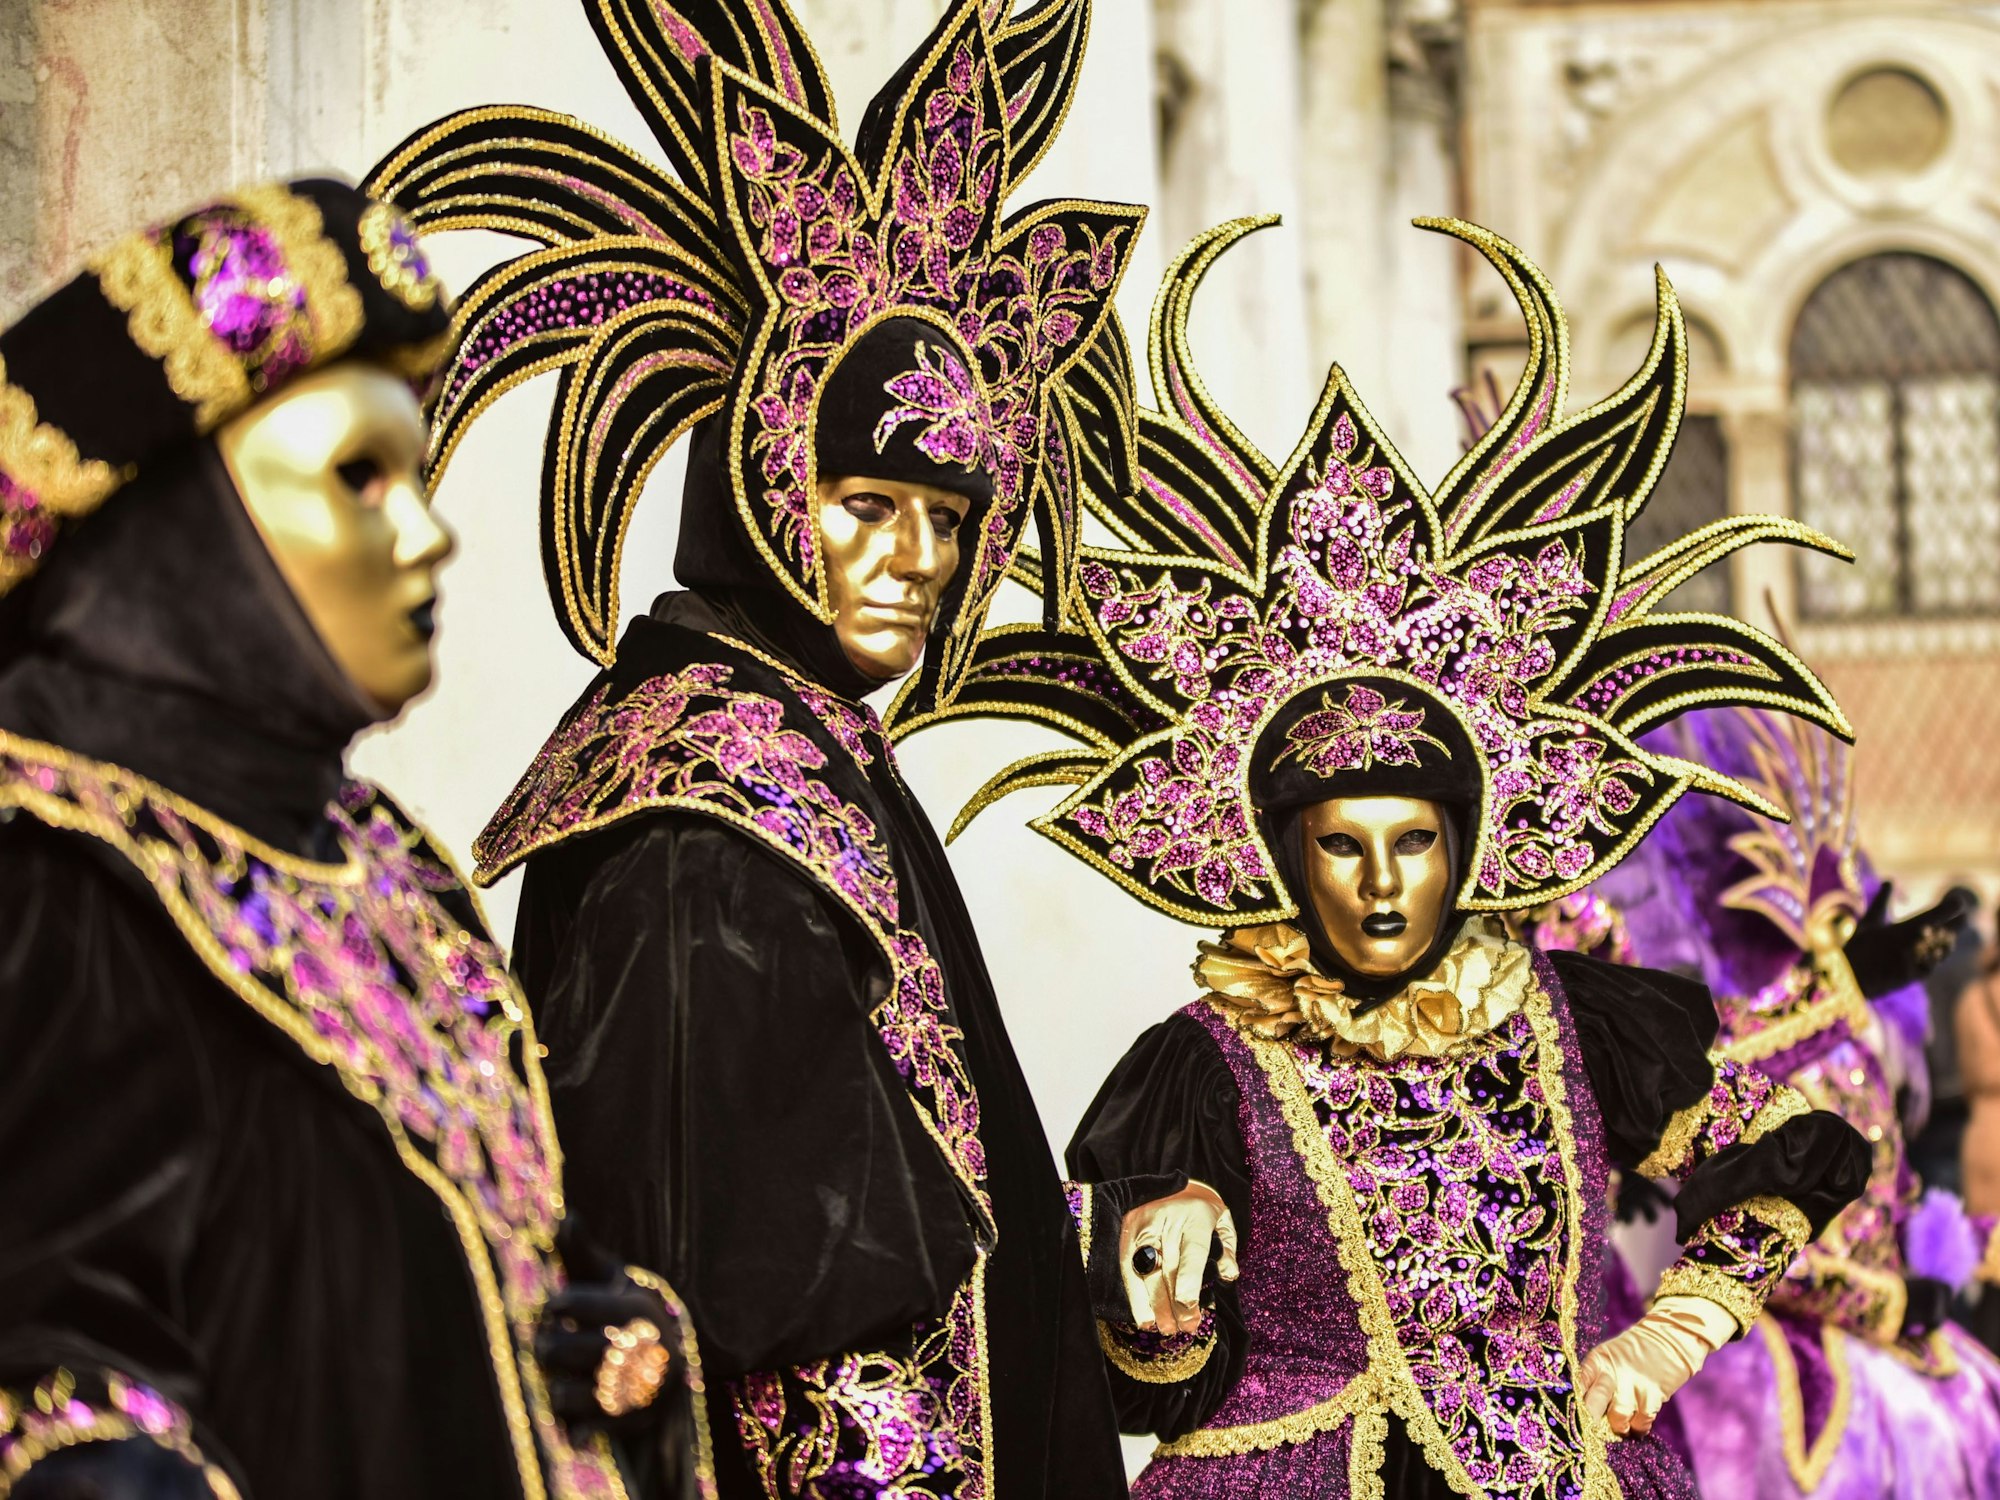 Personen mit verzierten Masken beim Karneval in Venedig.